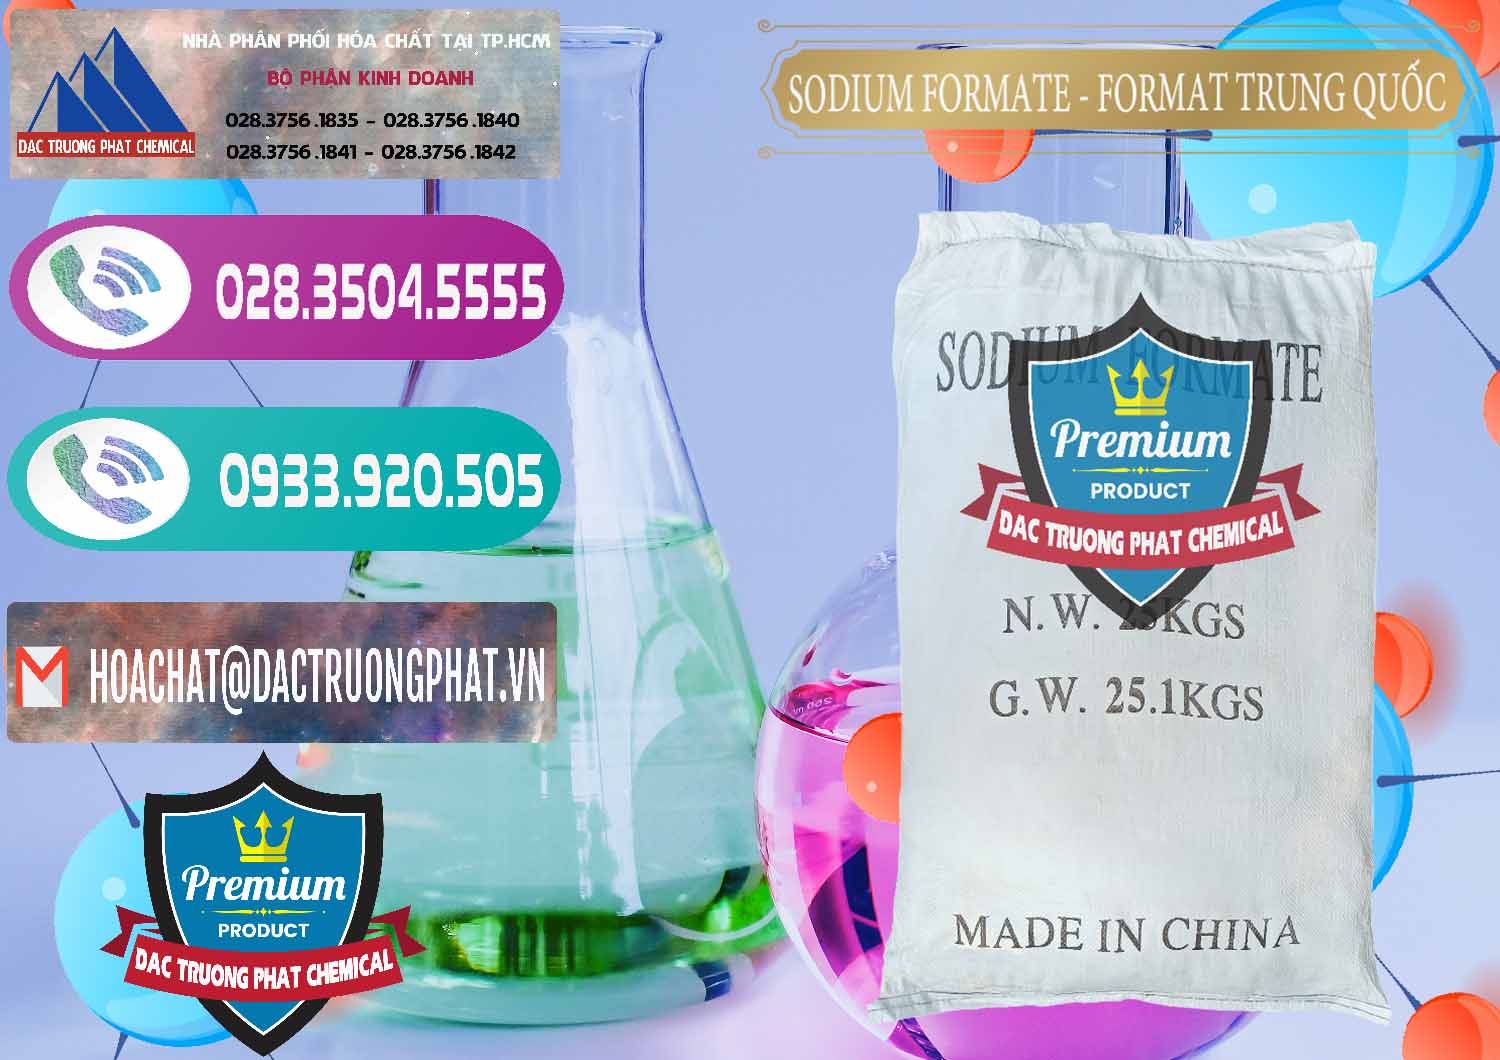 Cty bán ( cung ứng ) Sodium Formate - Natri Format Trung Quốc China - 0142 - Cty chuyên phân phối & bán hóa chất tại TP.HCM - hoachatxulynuoc.com